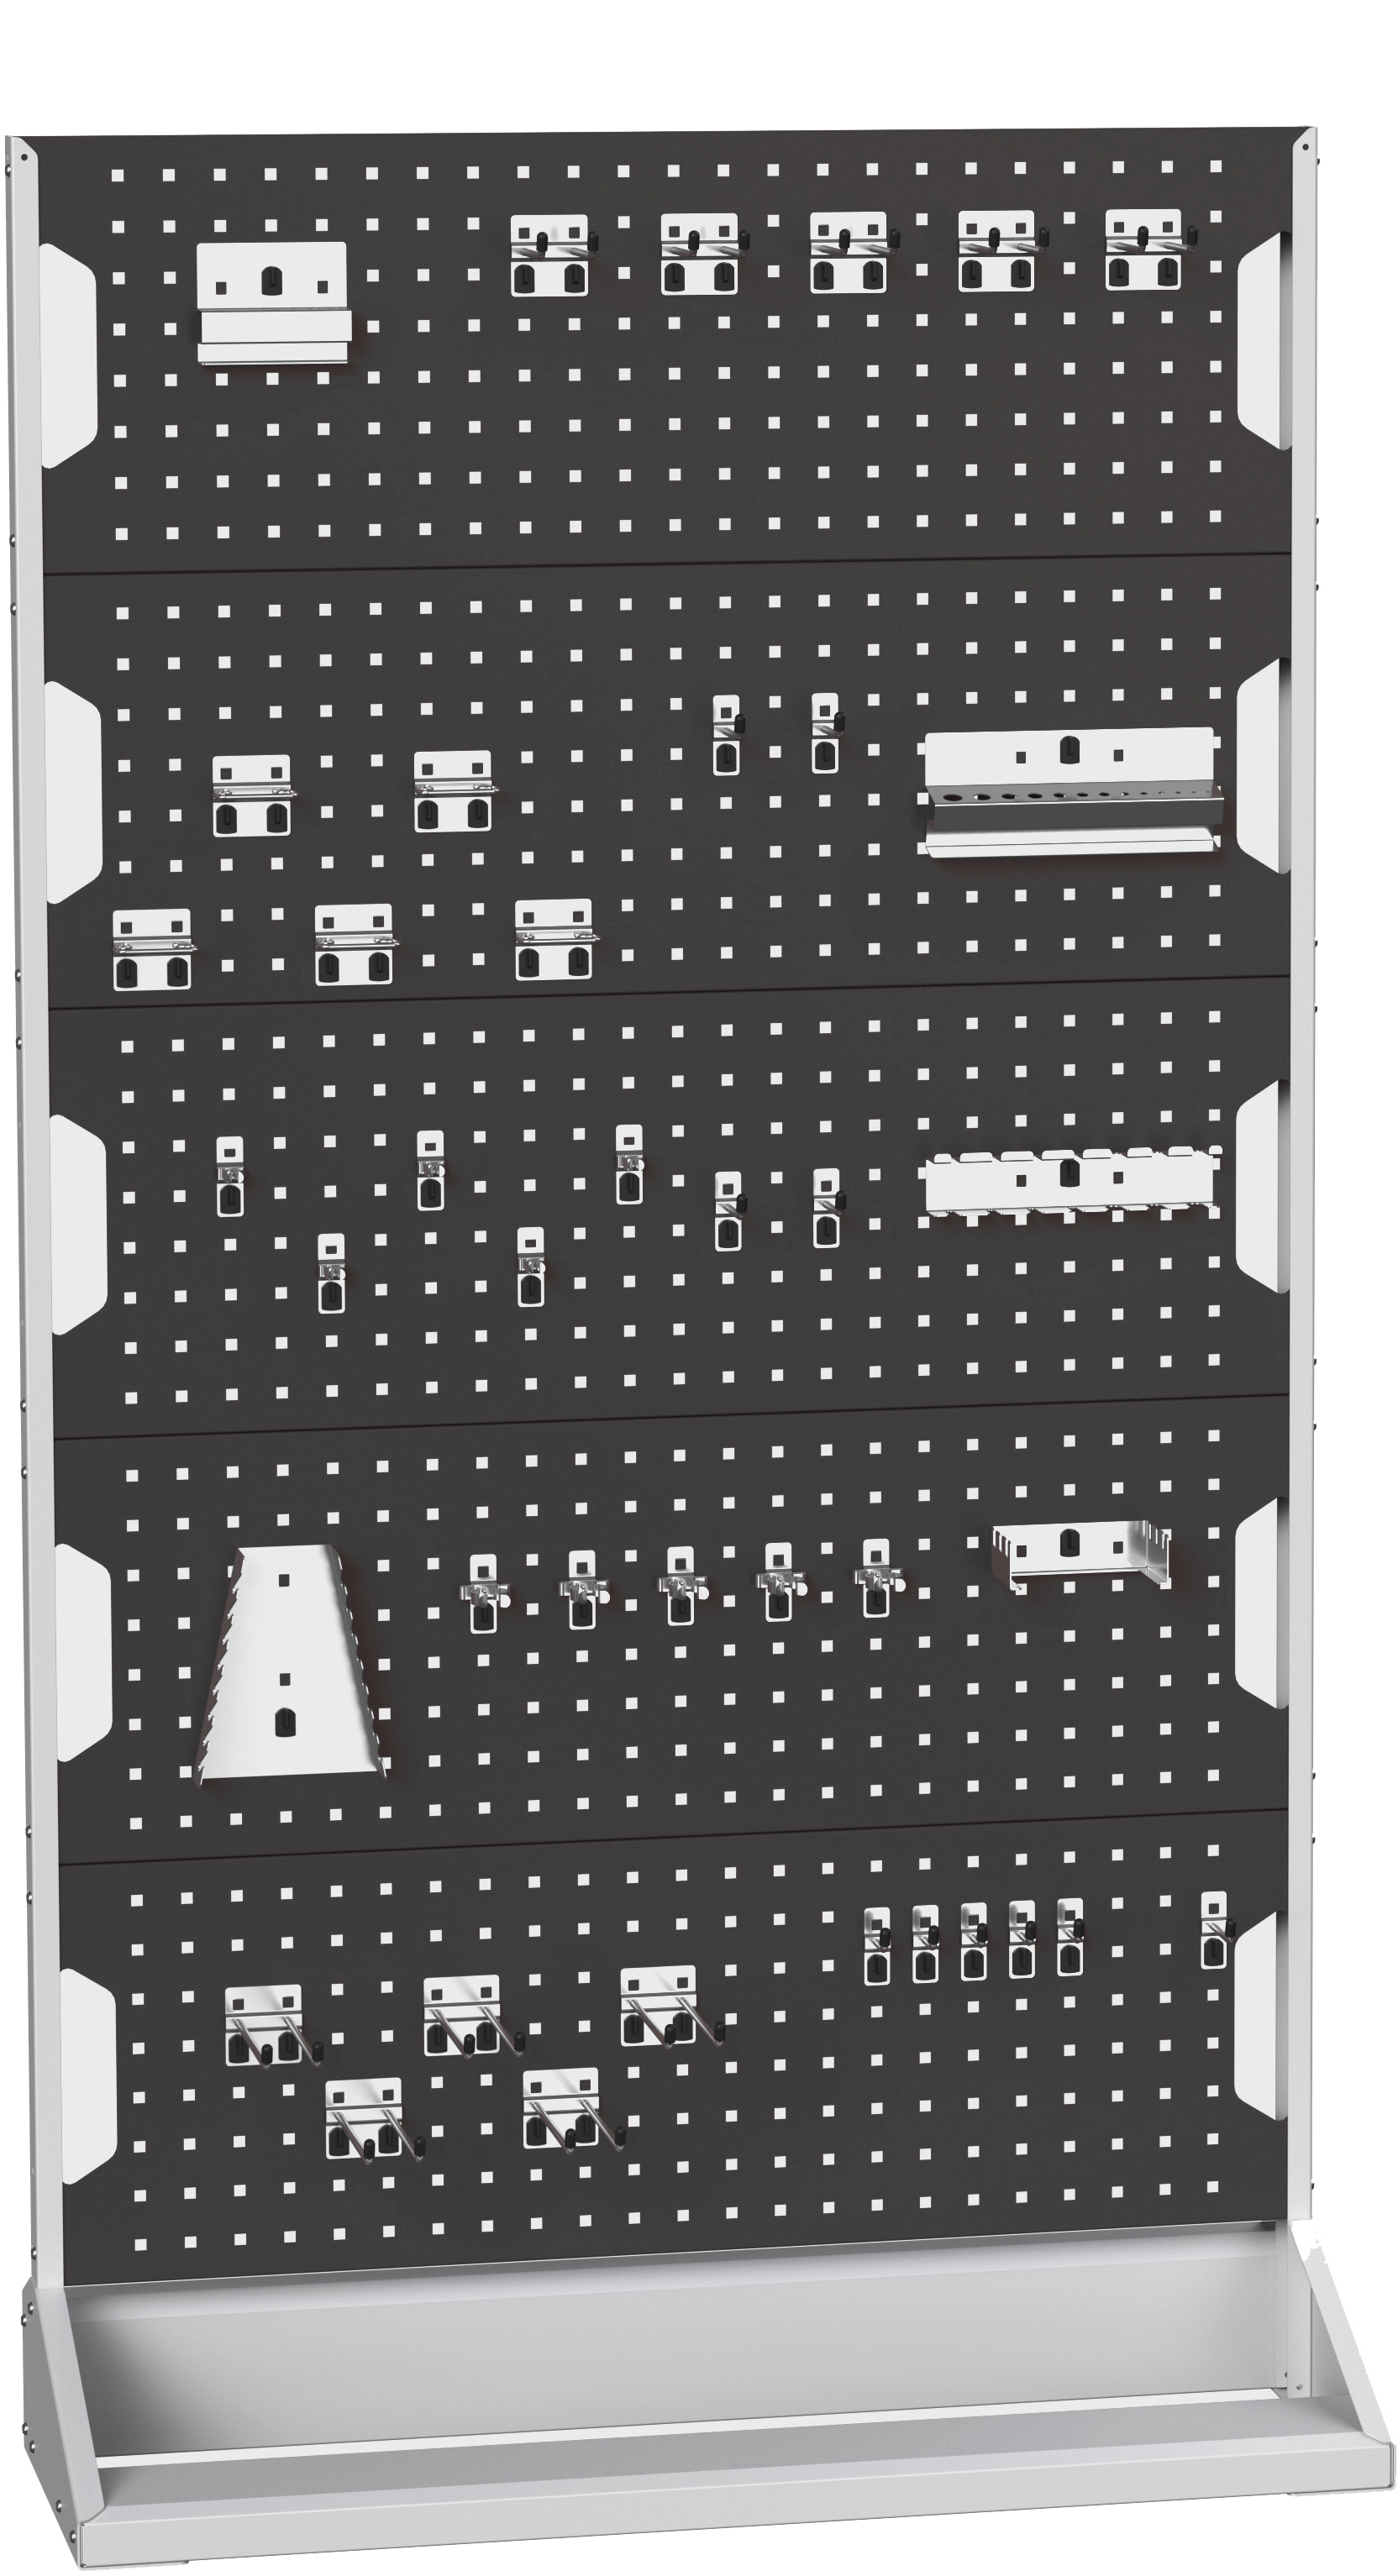 Bott Perfo Panel Rack (Single Sided) - 16917302.19V